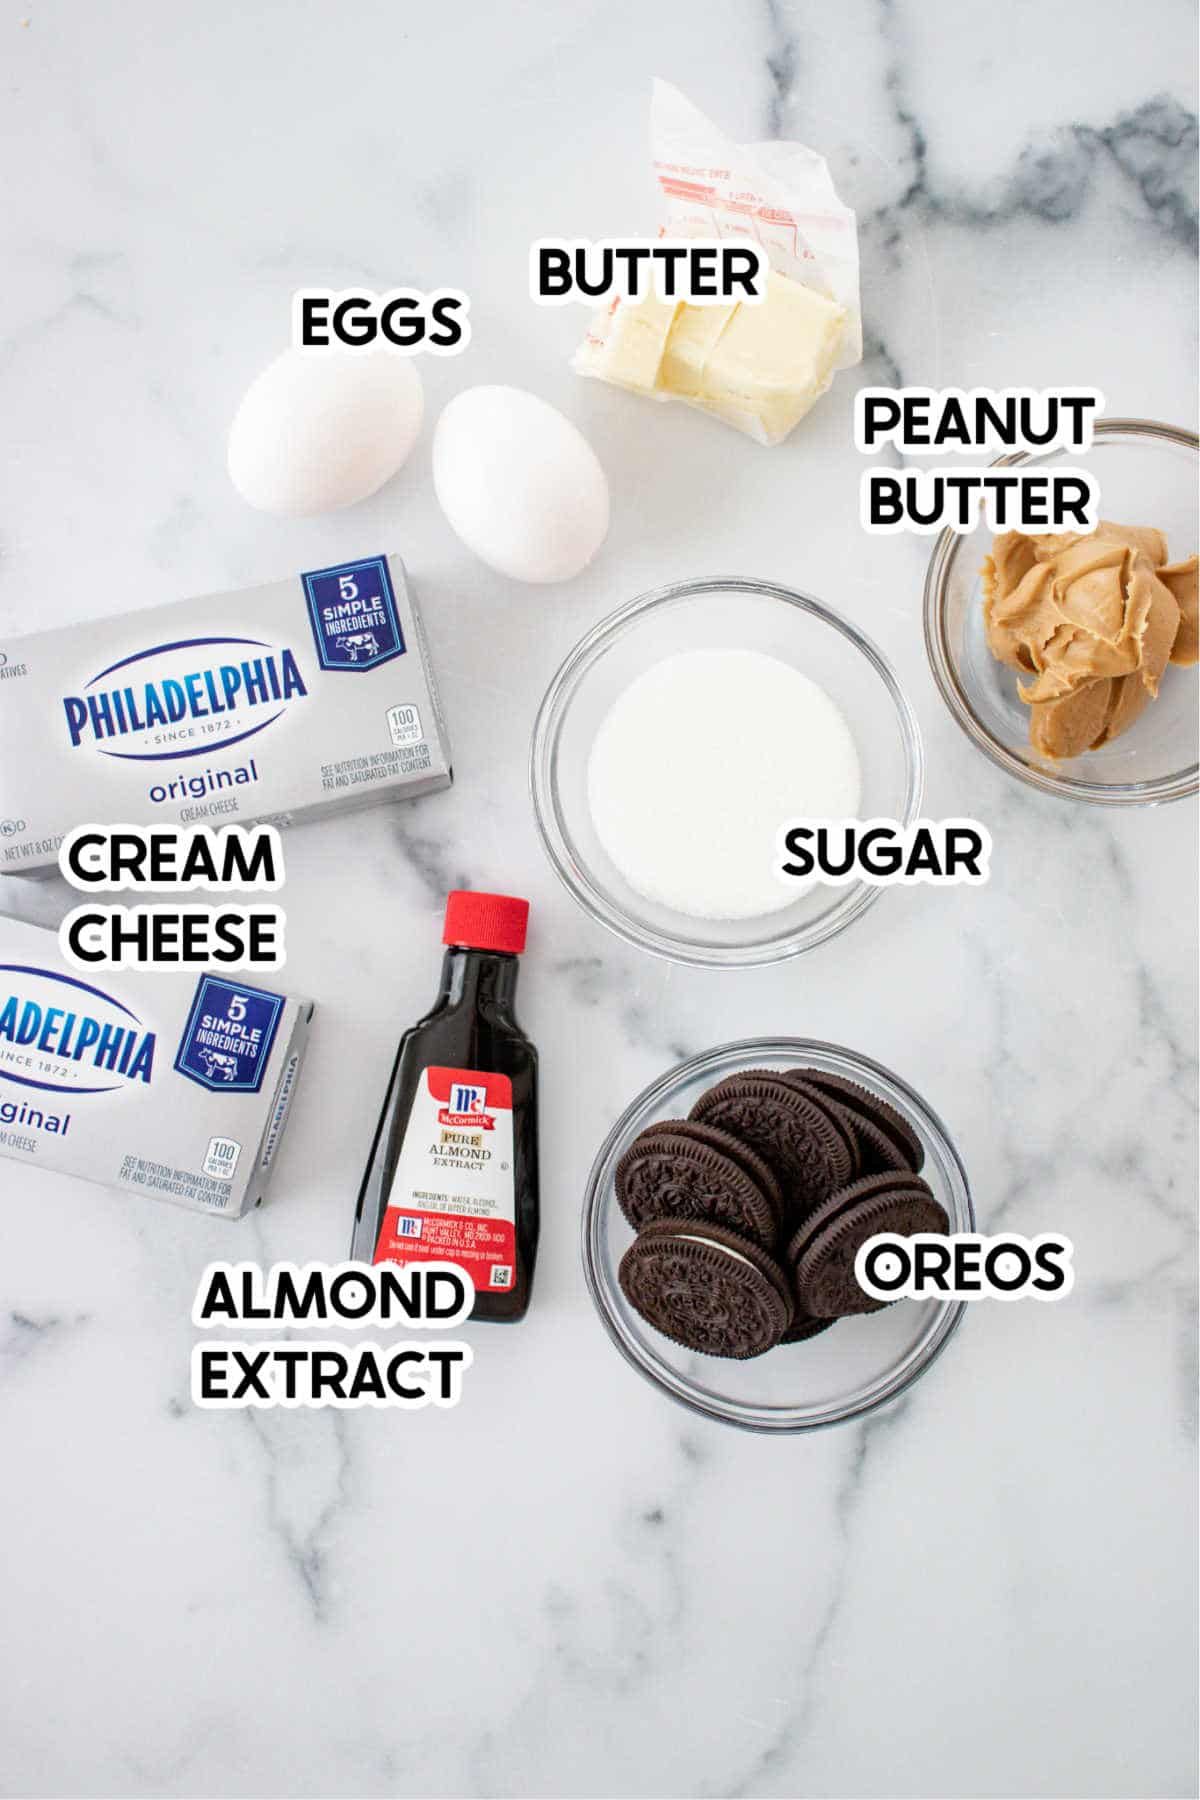 Ingredientes para fazer mini cheesecakes Oreo com rótulos